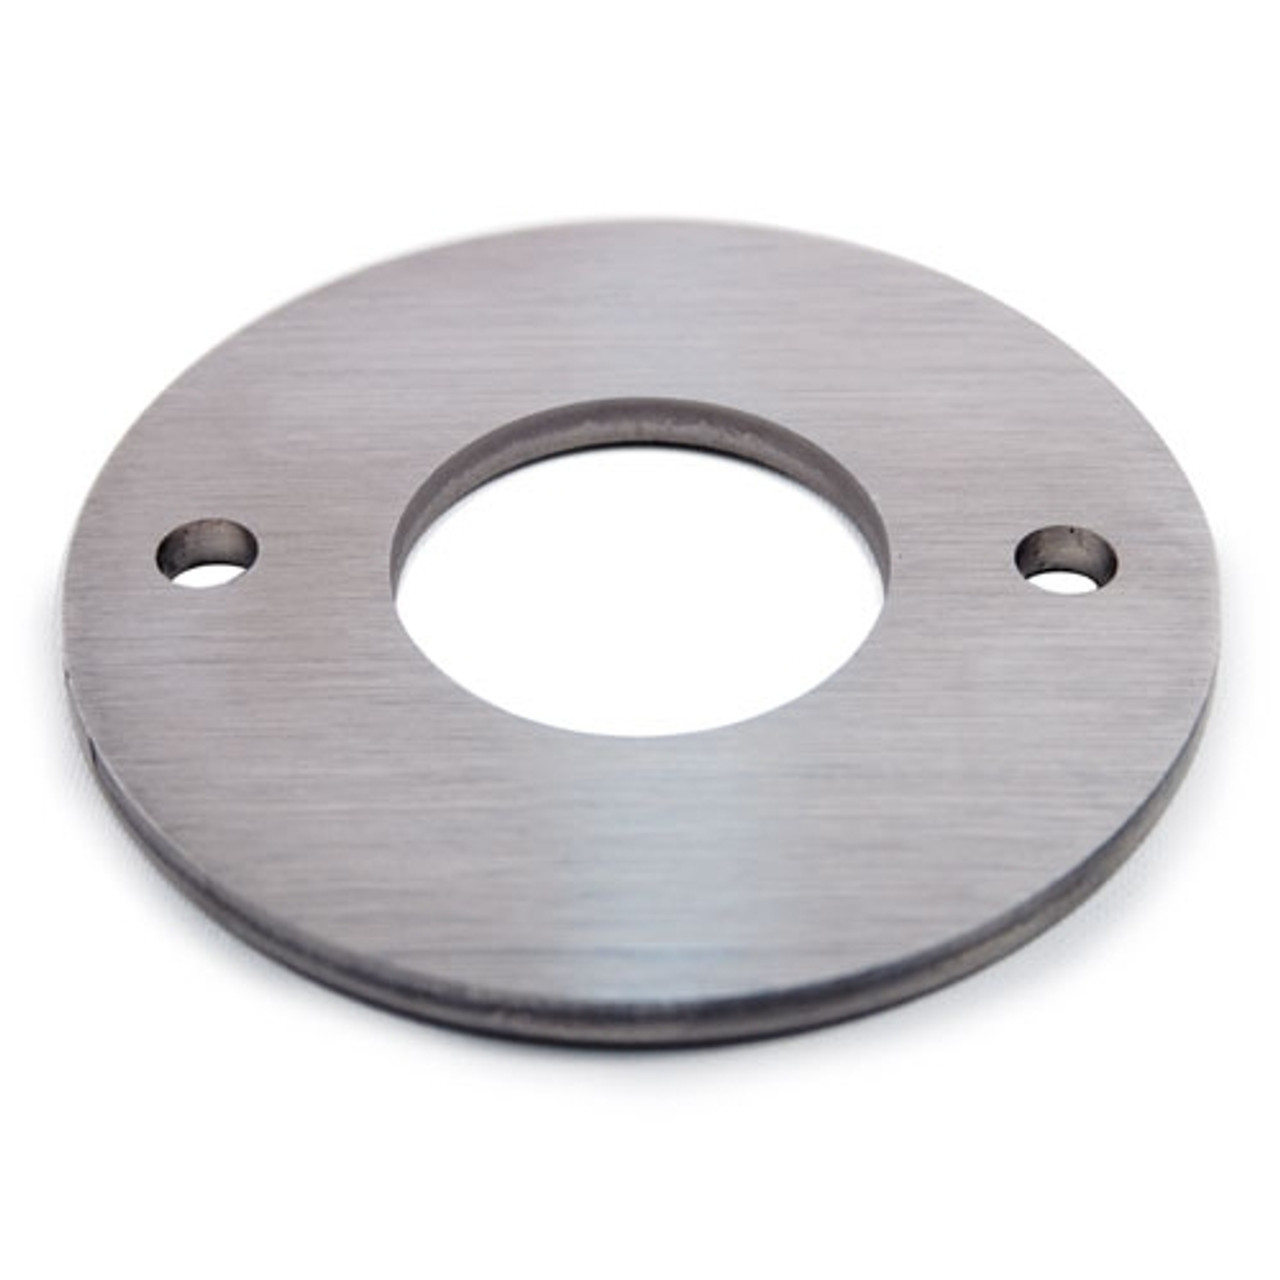 E0691 Stainless Steel Disc, 1 11/16" Diameter